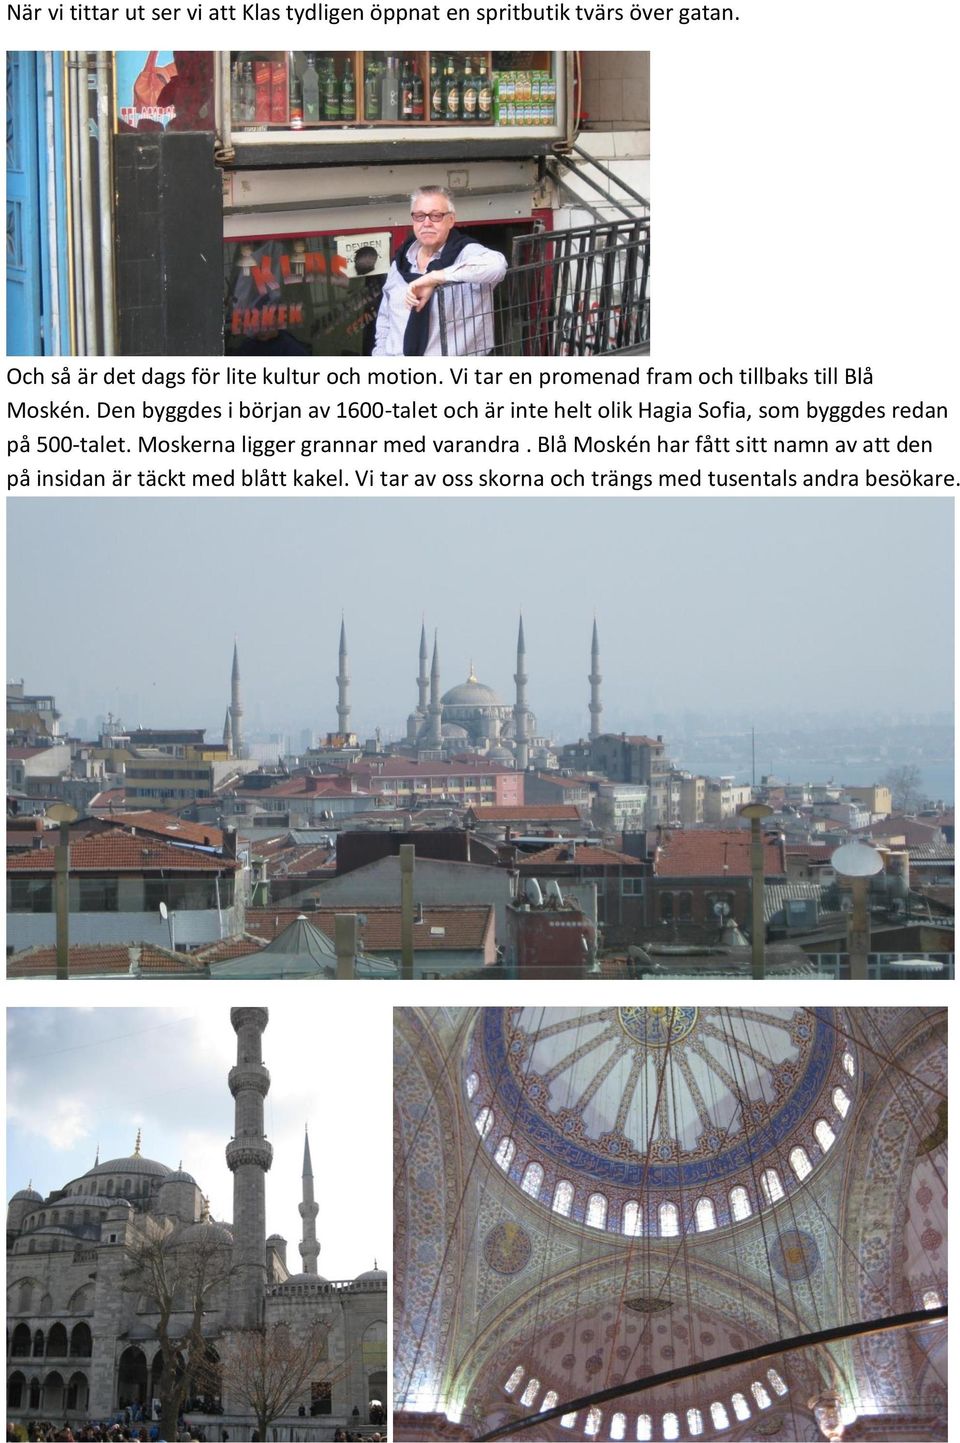 Den byggdes i början av 1600-talet och är inte helt olik Hagia Sofia, som byggdes redan på 500-talet.